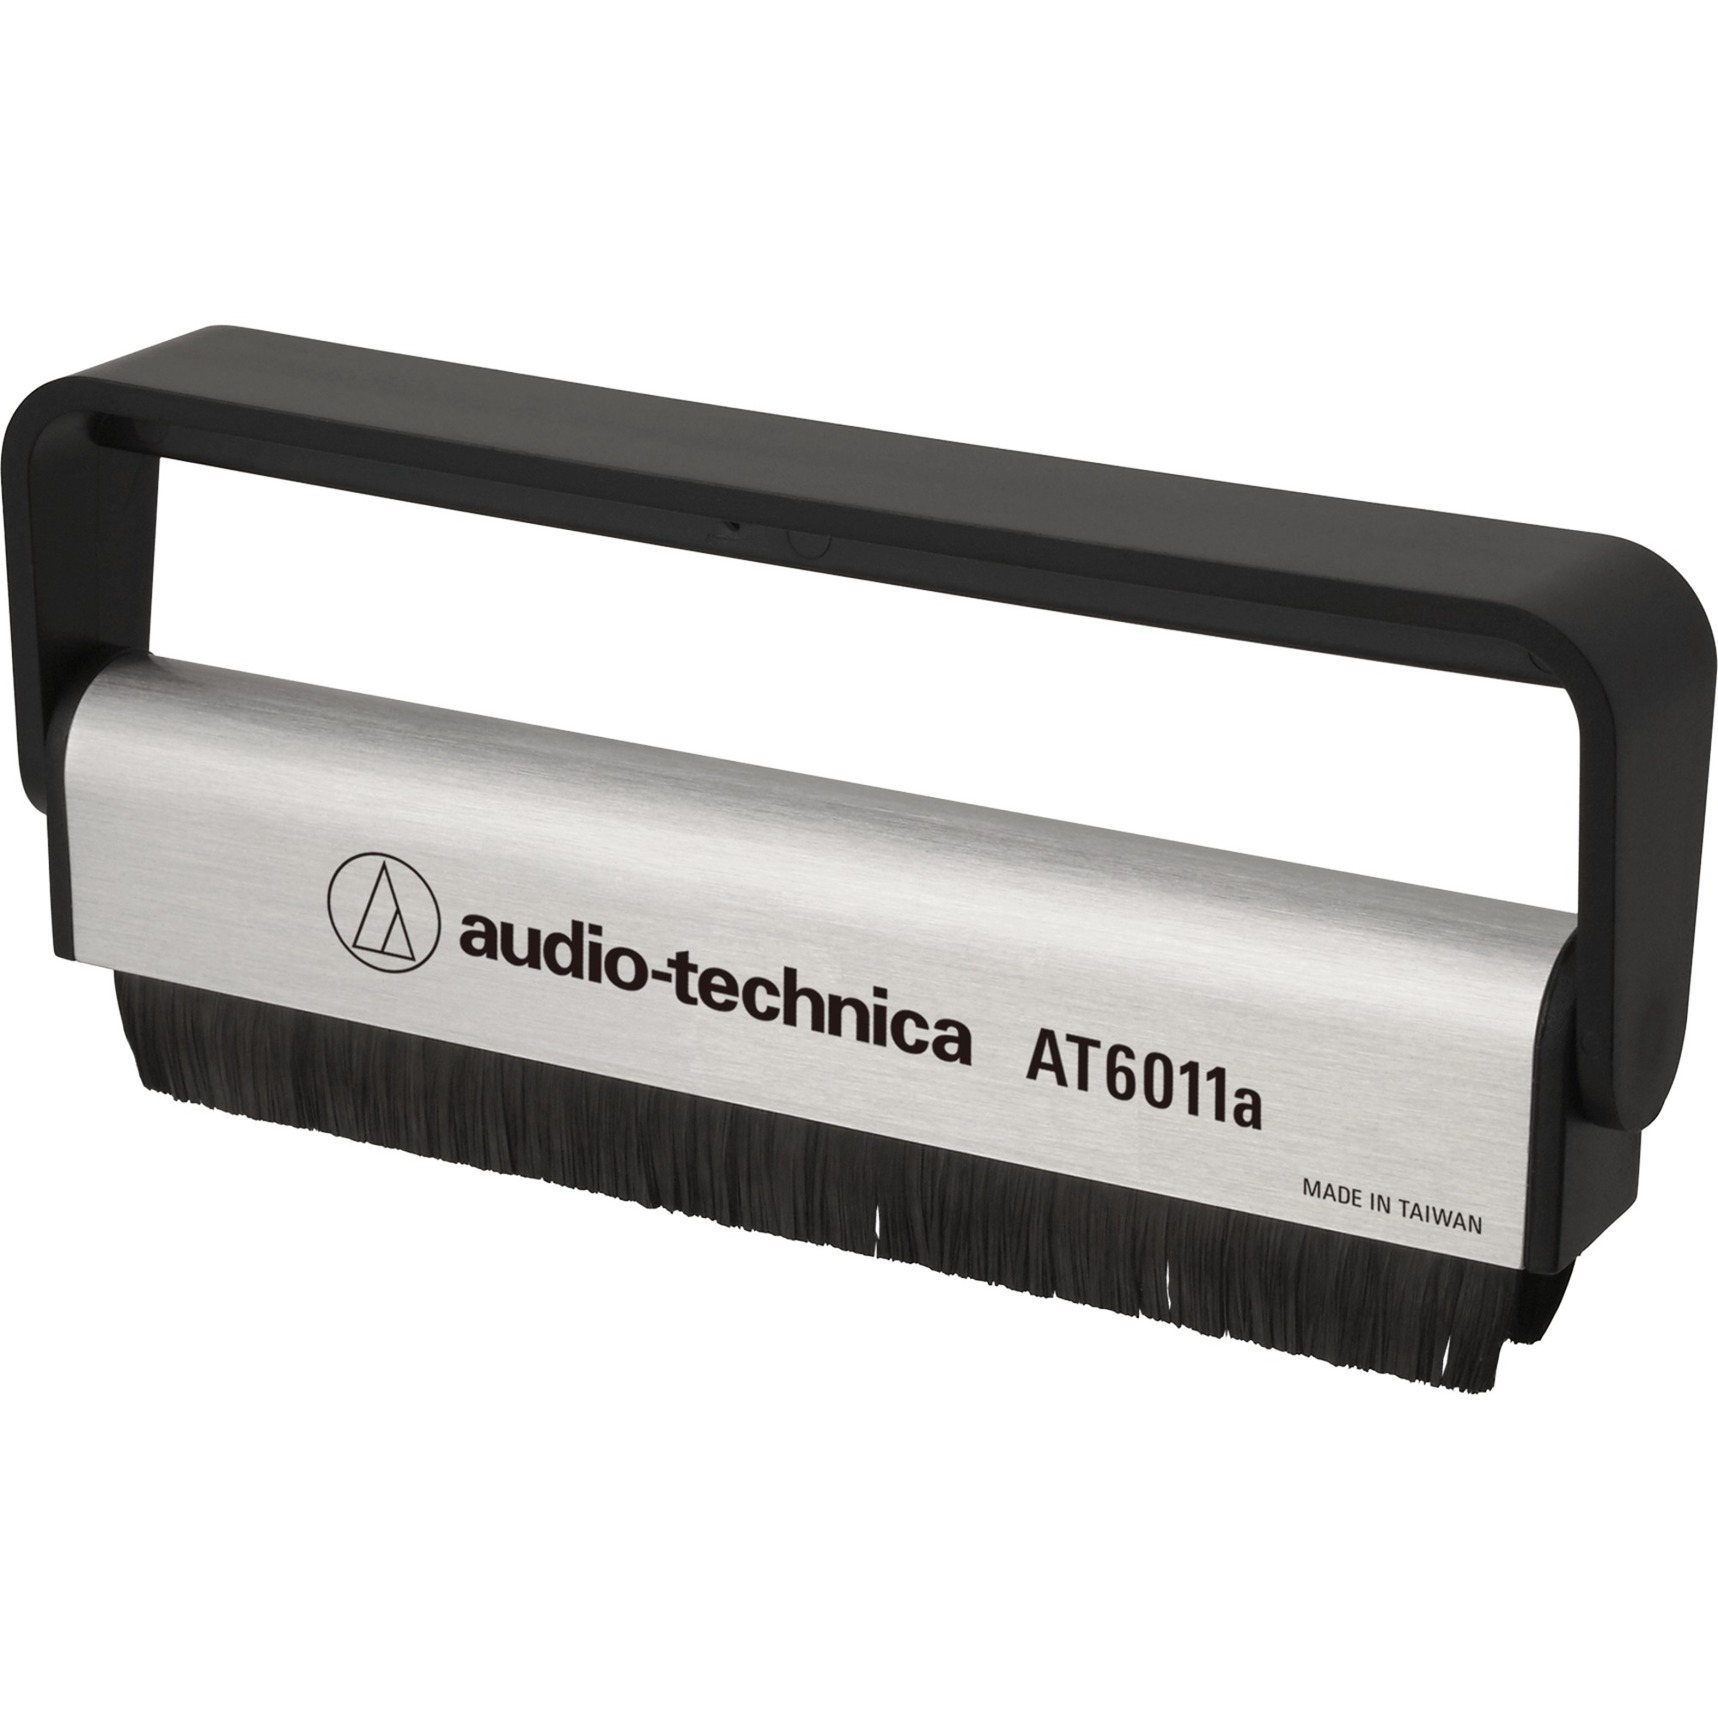 Antistatische Schallplattenbürste AT6011a, Reinigungsbürste von Audio-Technica